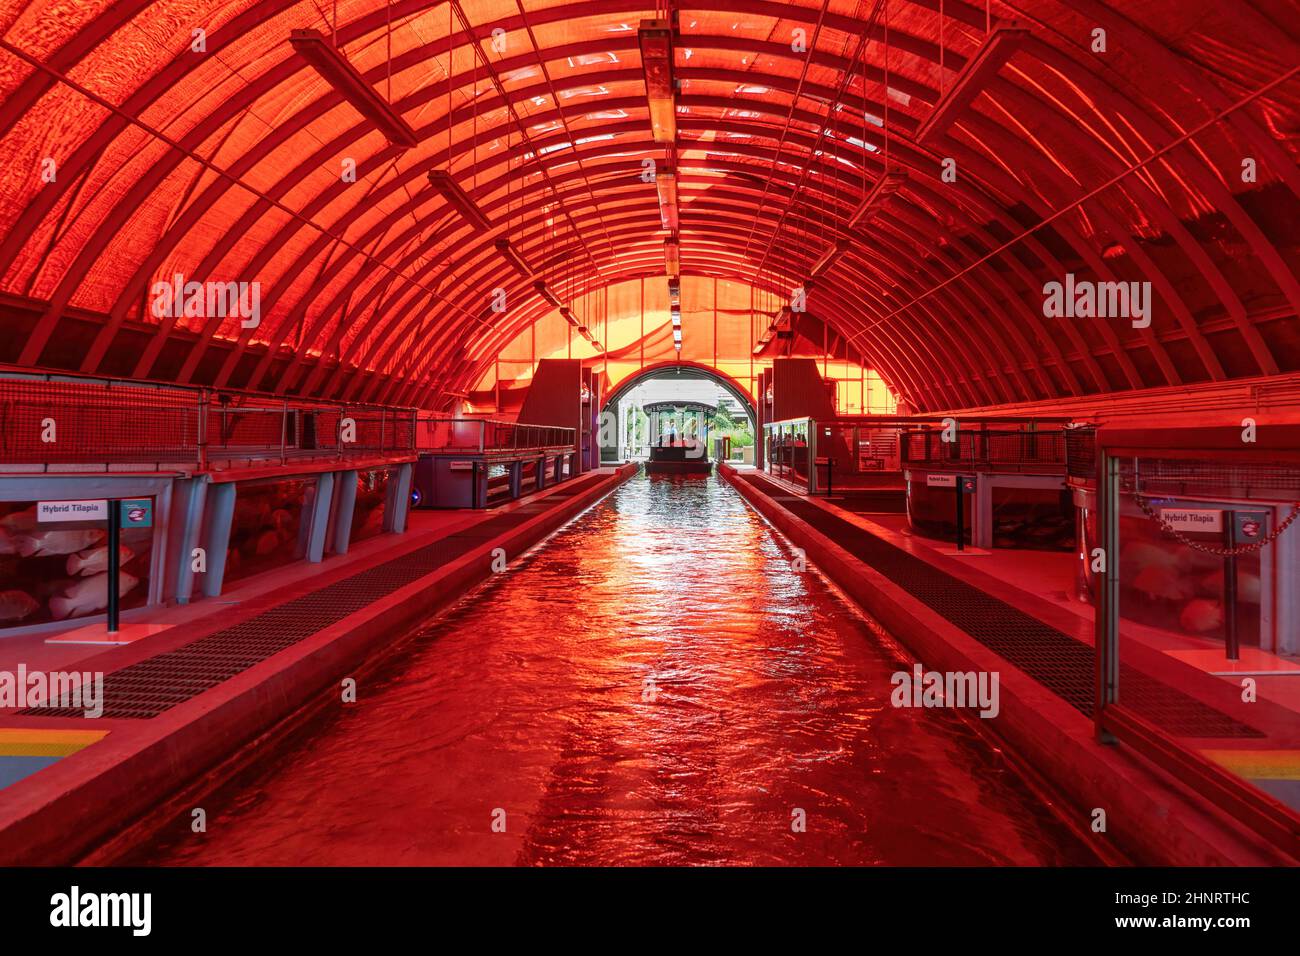 Sezione di aquaculture di vivere con il giro della barca della terra, parco a tema EPCOT, Walt Disney World Resort - Lago Buena Vista, Florida, Stati Uniti Foto Stock